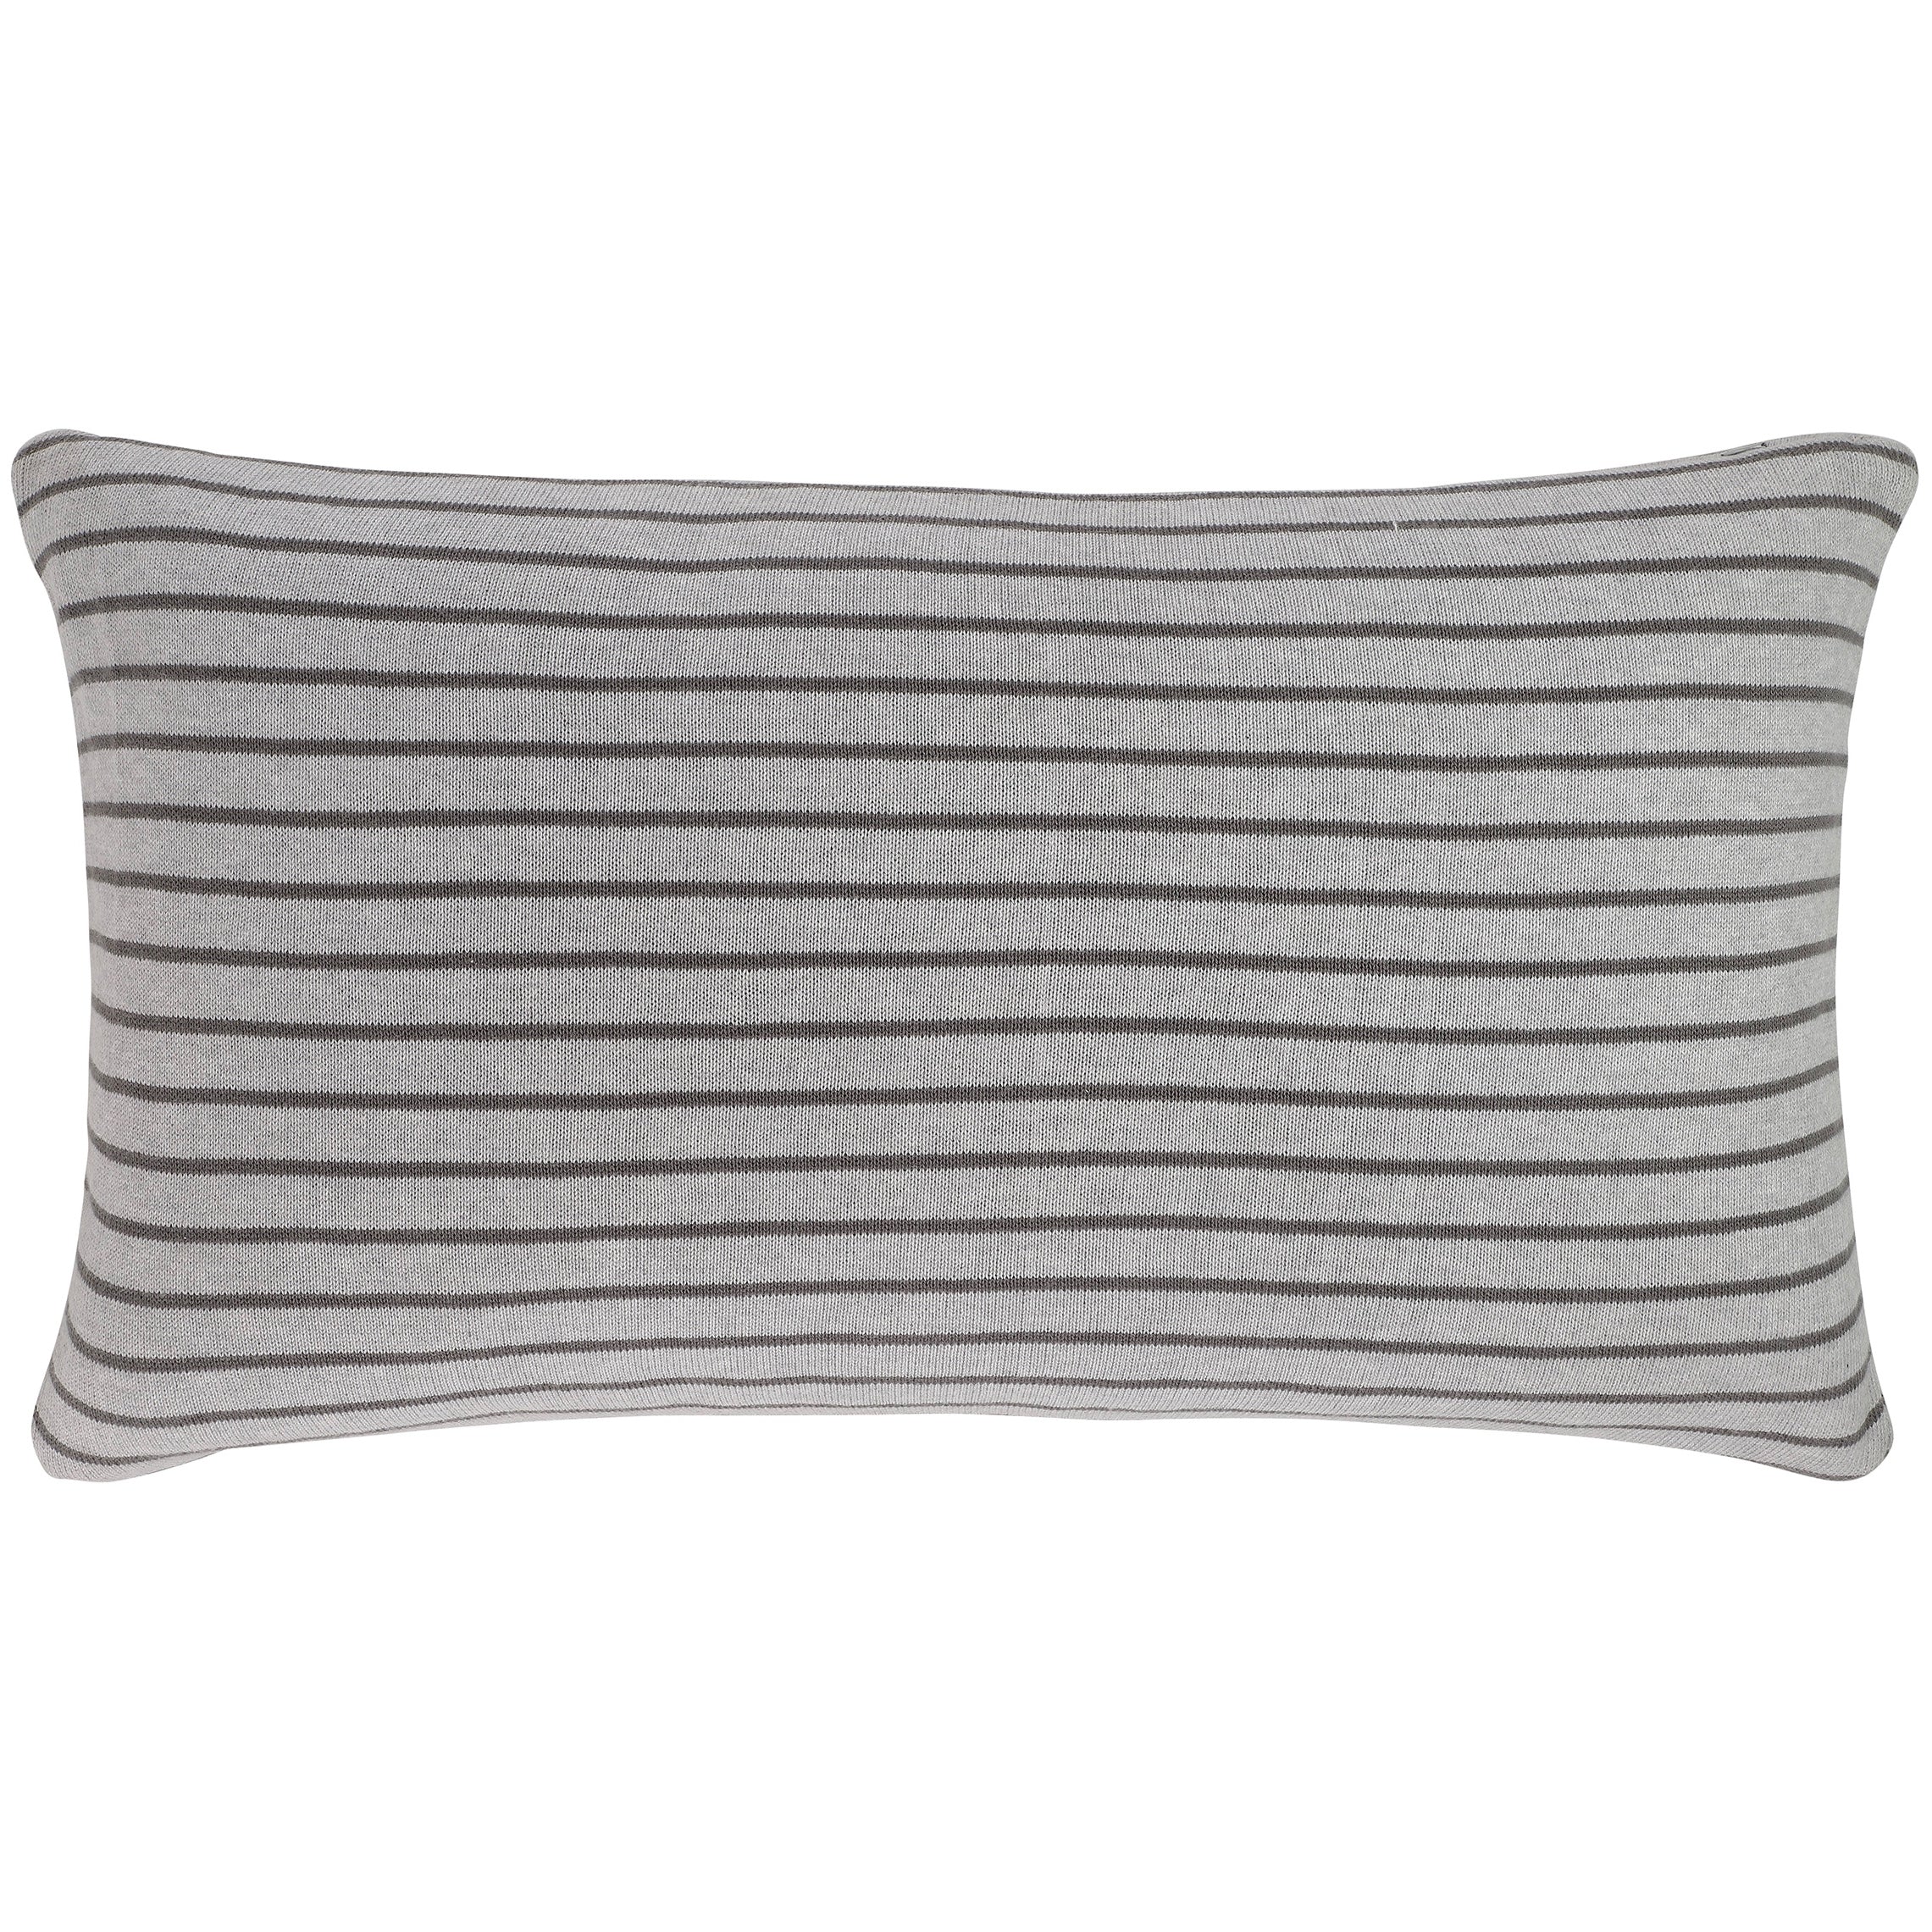 Stripe reversible pillow - Grey/Smoke Pearl